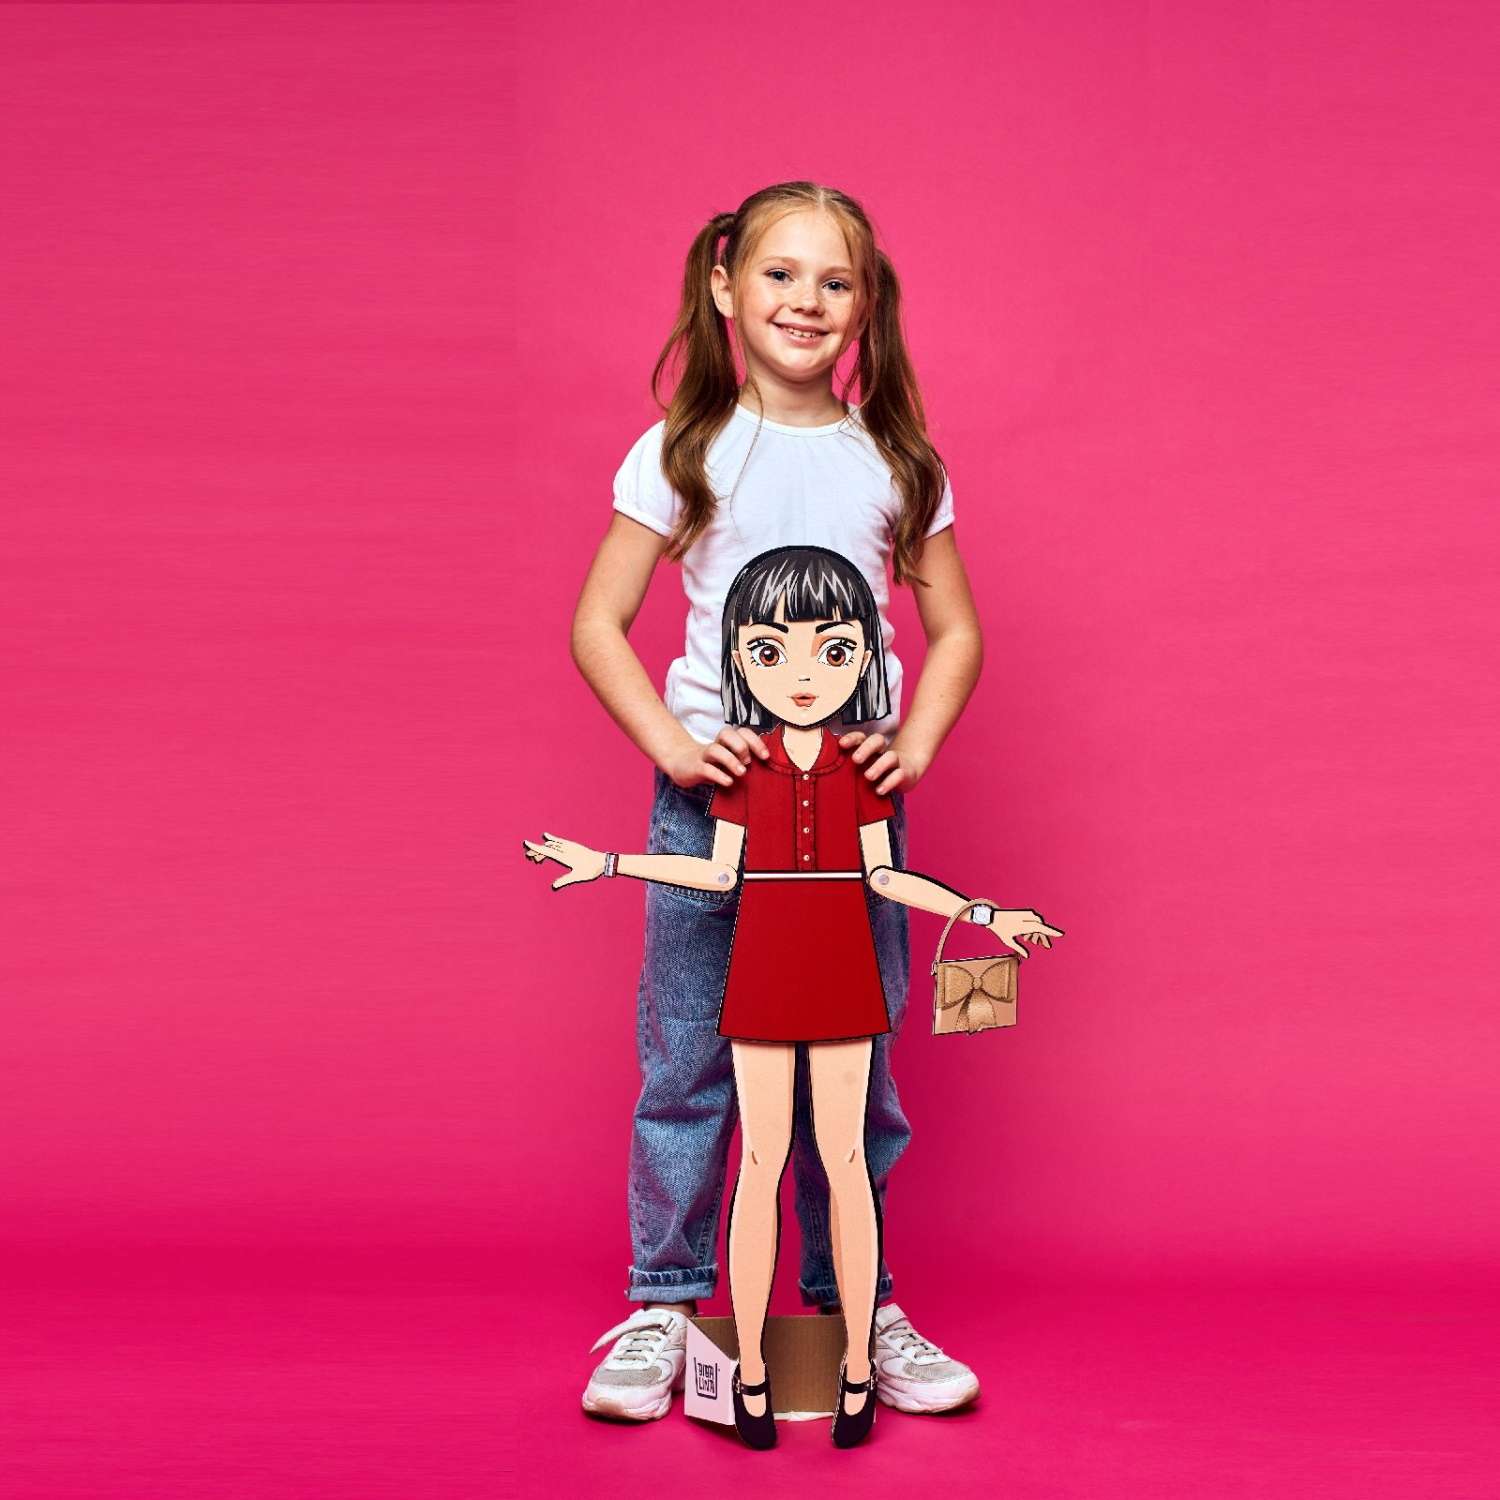 Кукла Bibalina с одеждой из картона Trendy doll Хлоя ИНП-102 - фото 6